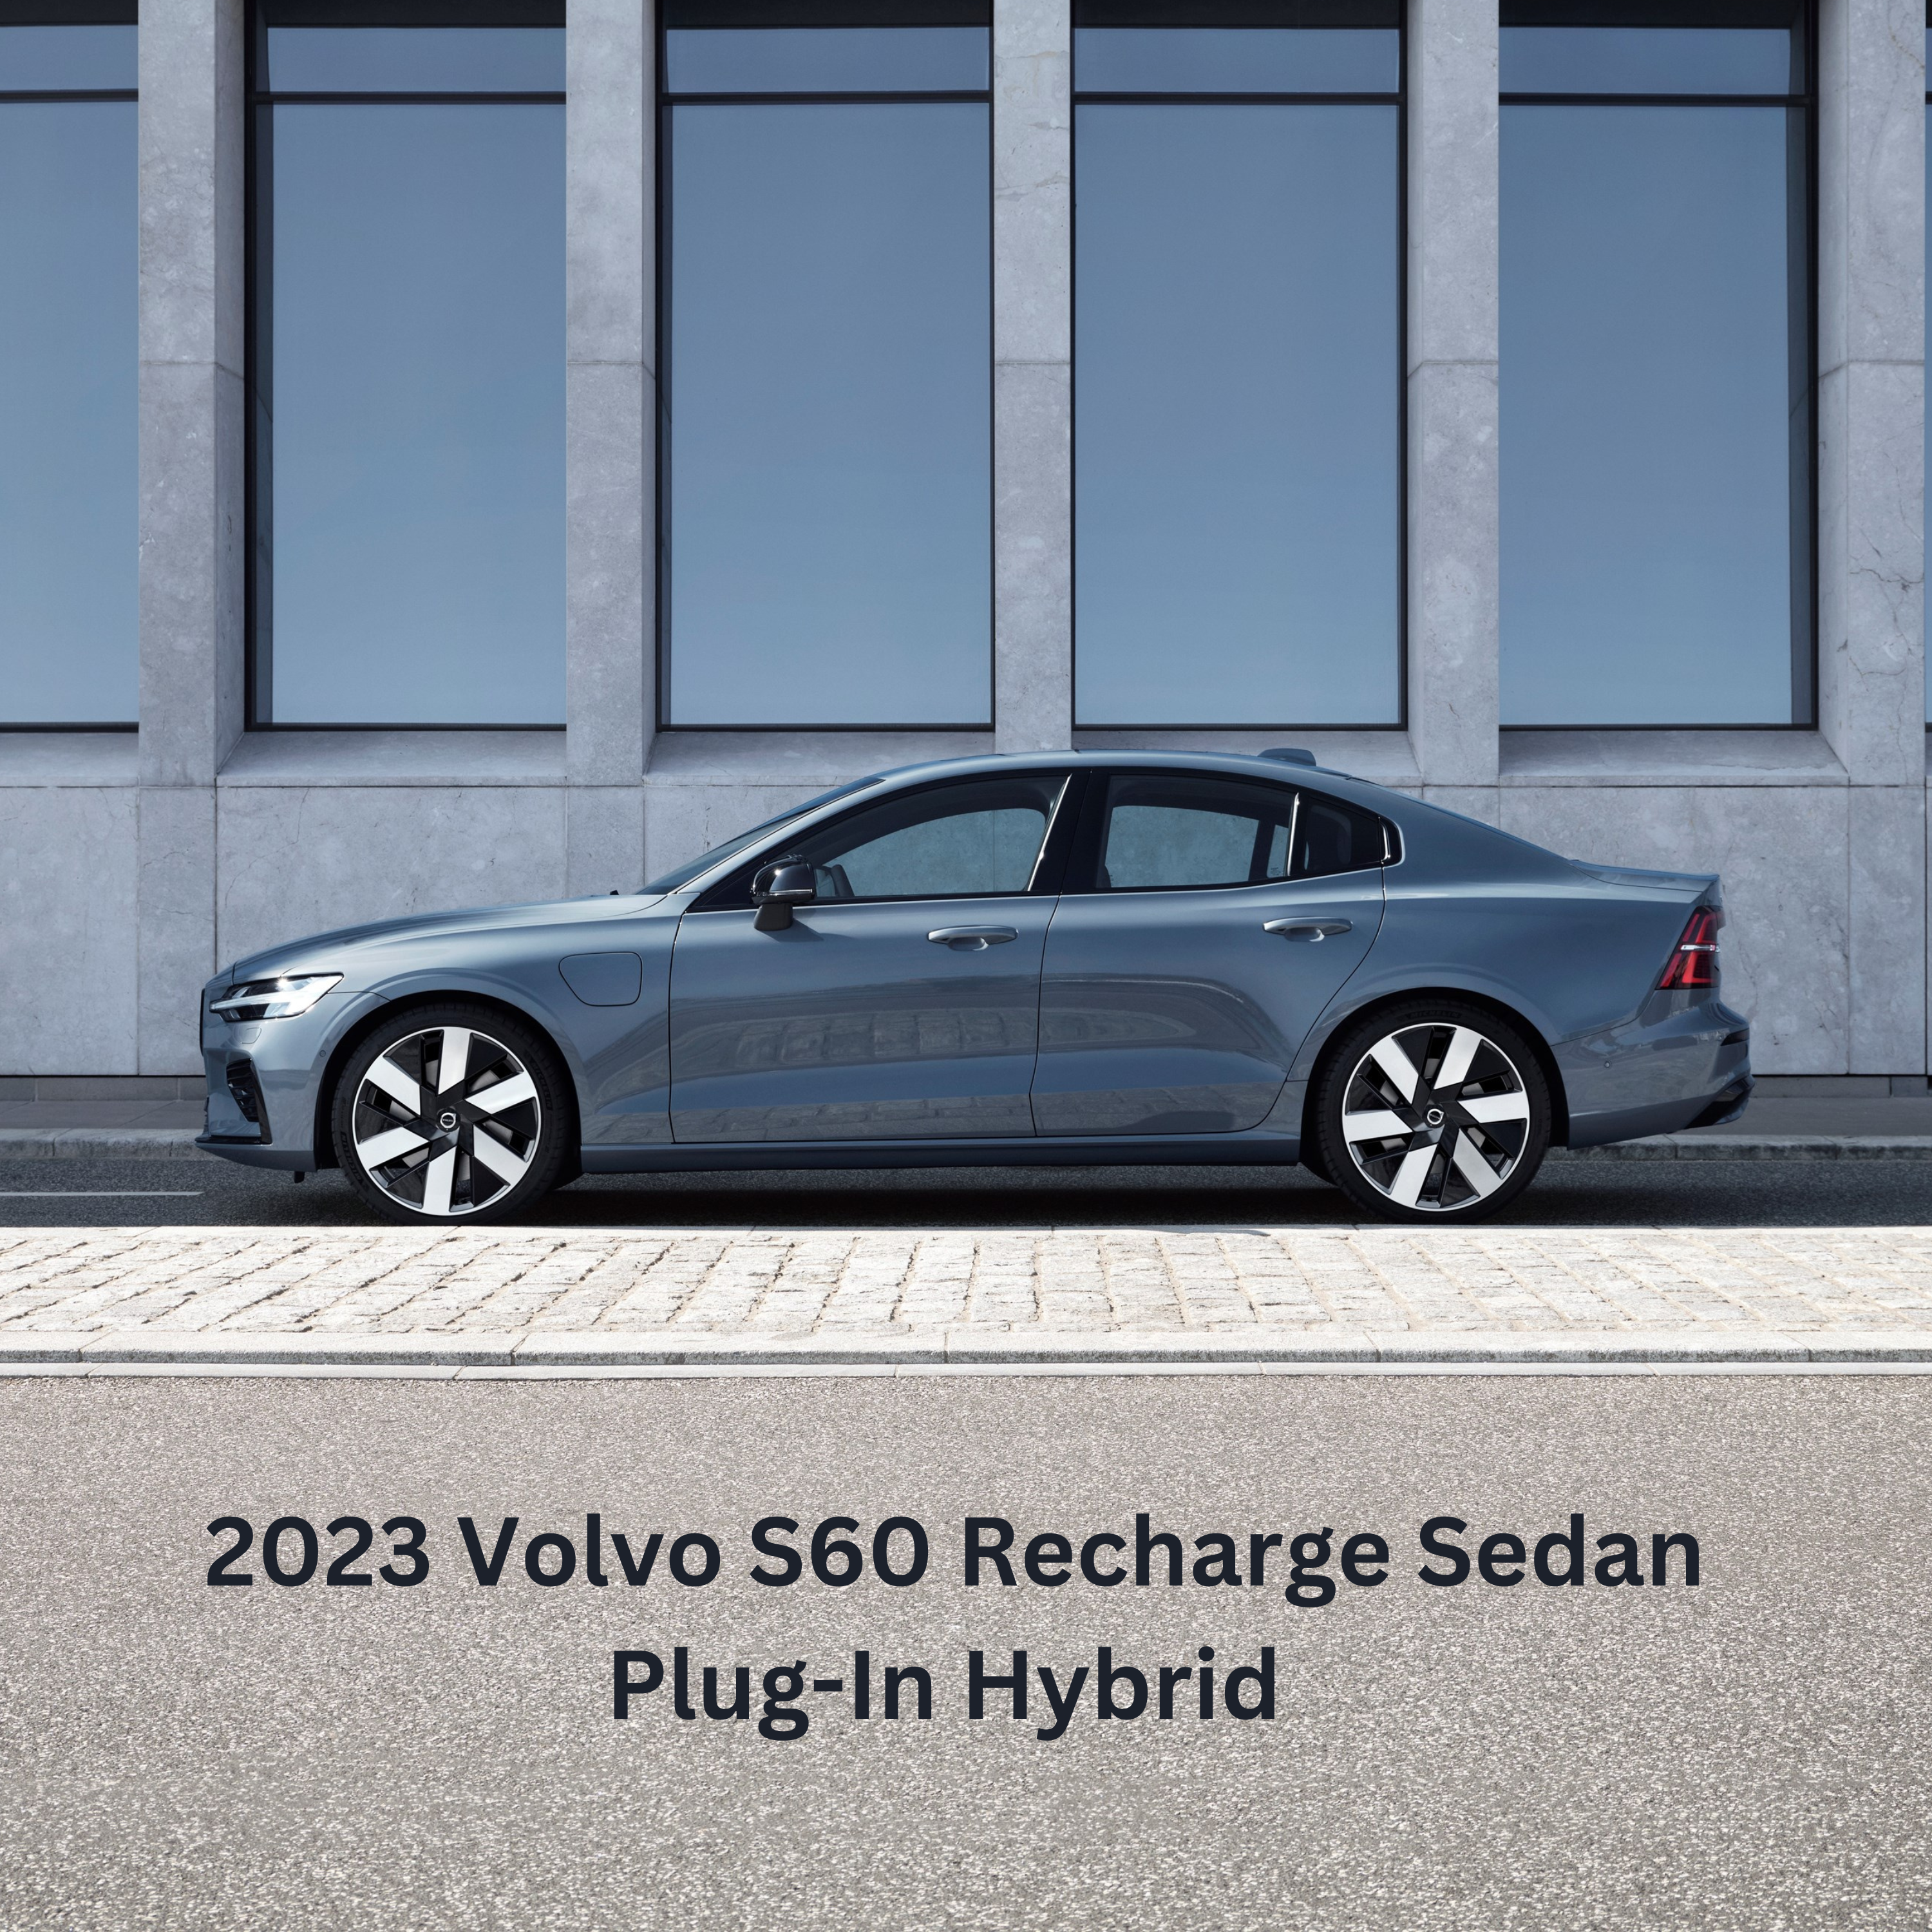 2023 Volvo S60 Recharge Sedan Plug-In Hybrid